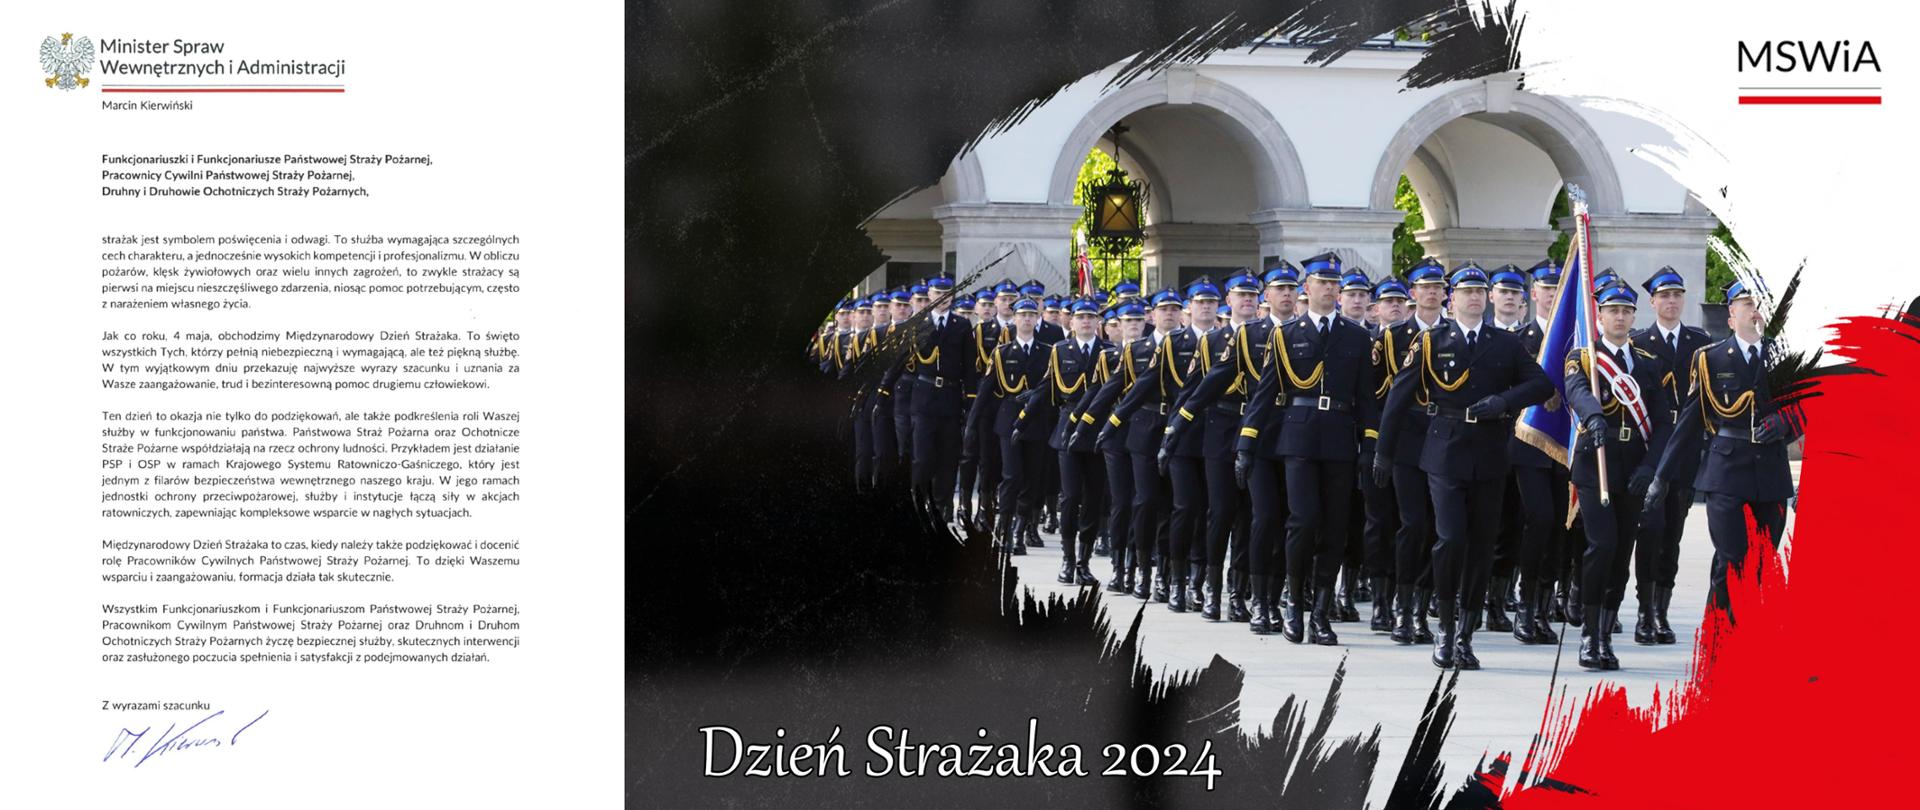 Życzenia z okazji Dnia Strażaka 04.05.2024, w tle strażacy podczas marszu ze sztandarem